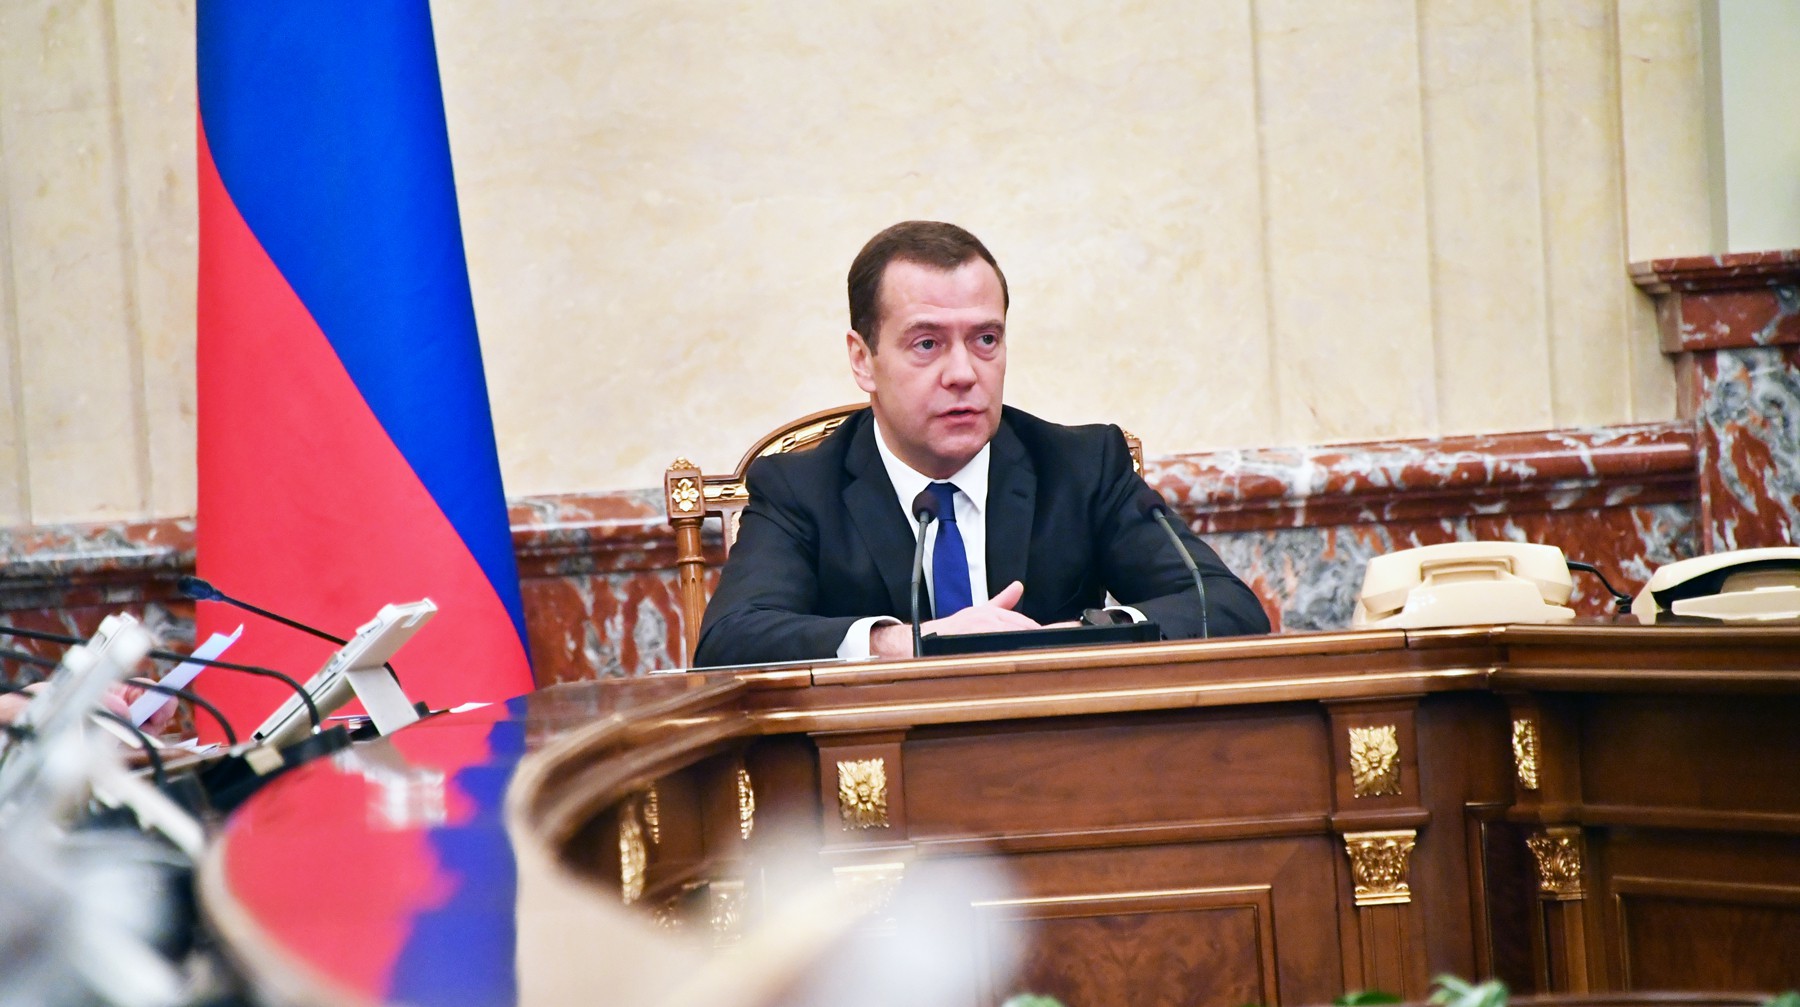 Dailystorm - Коней на переправе не меняют. Сохранит ли Медведев свой пост в новой конфигурации правительства?